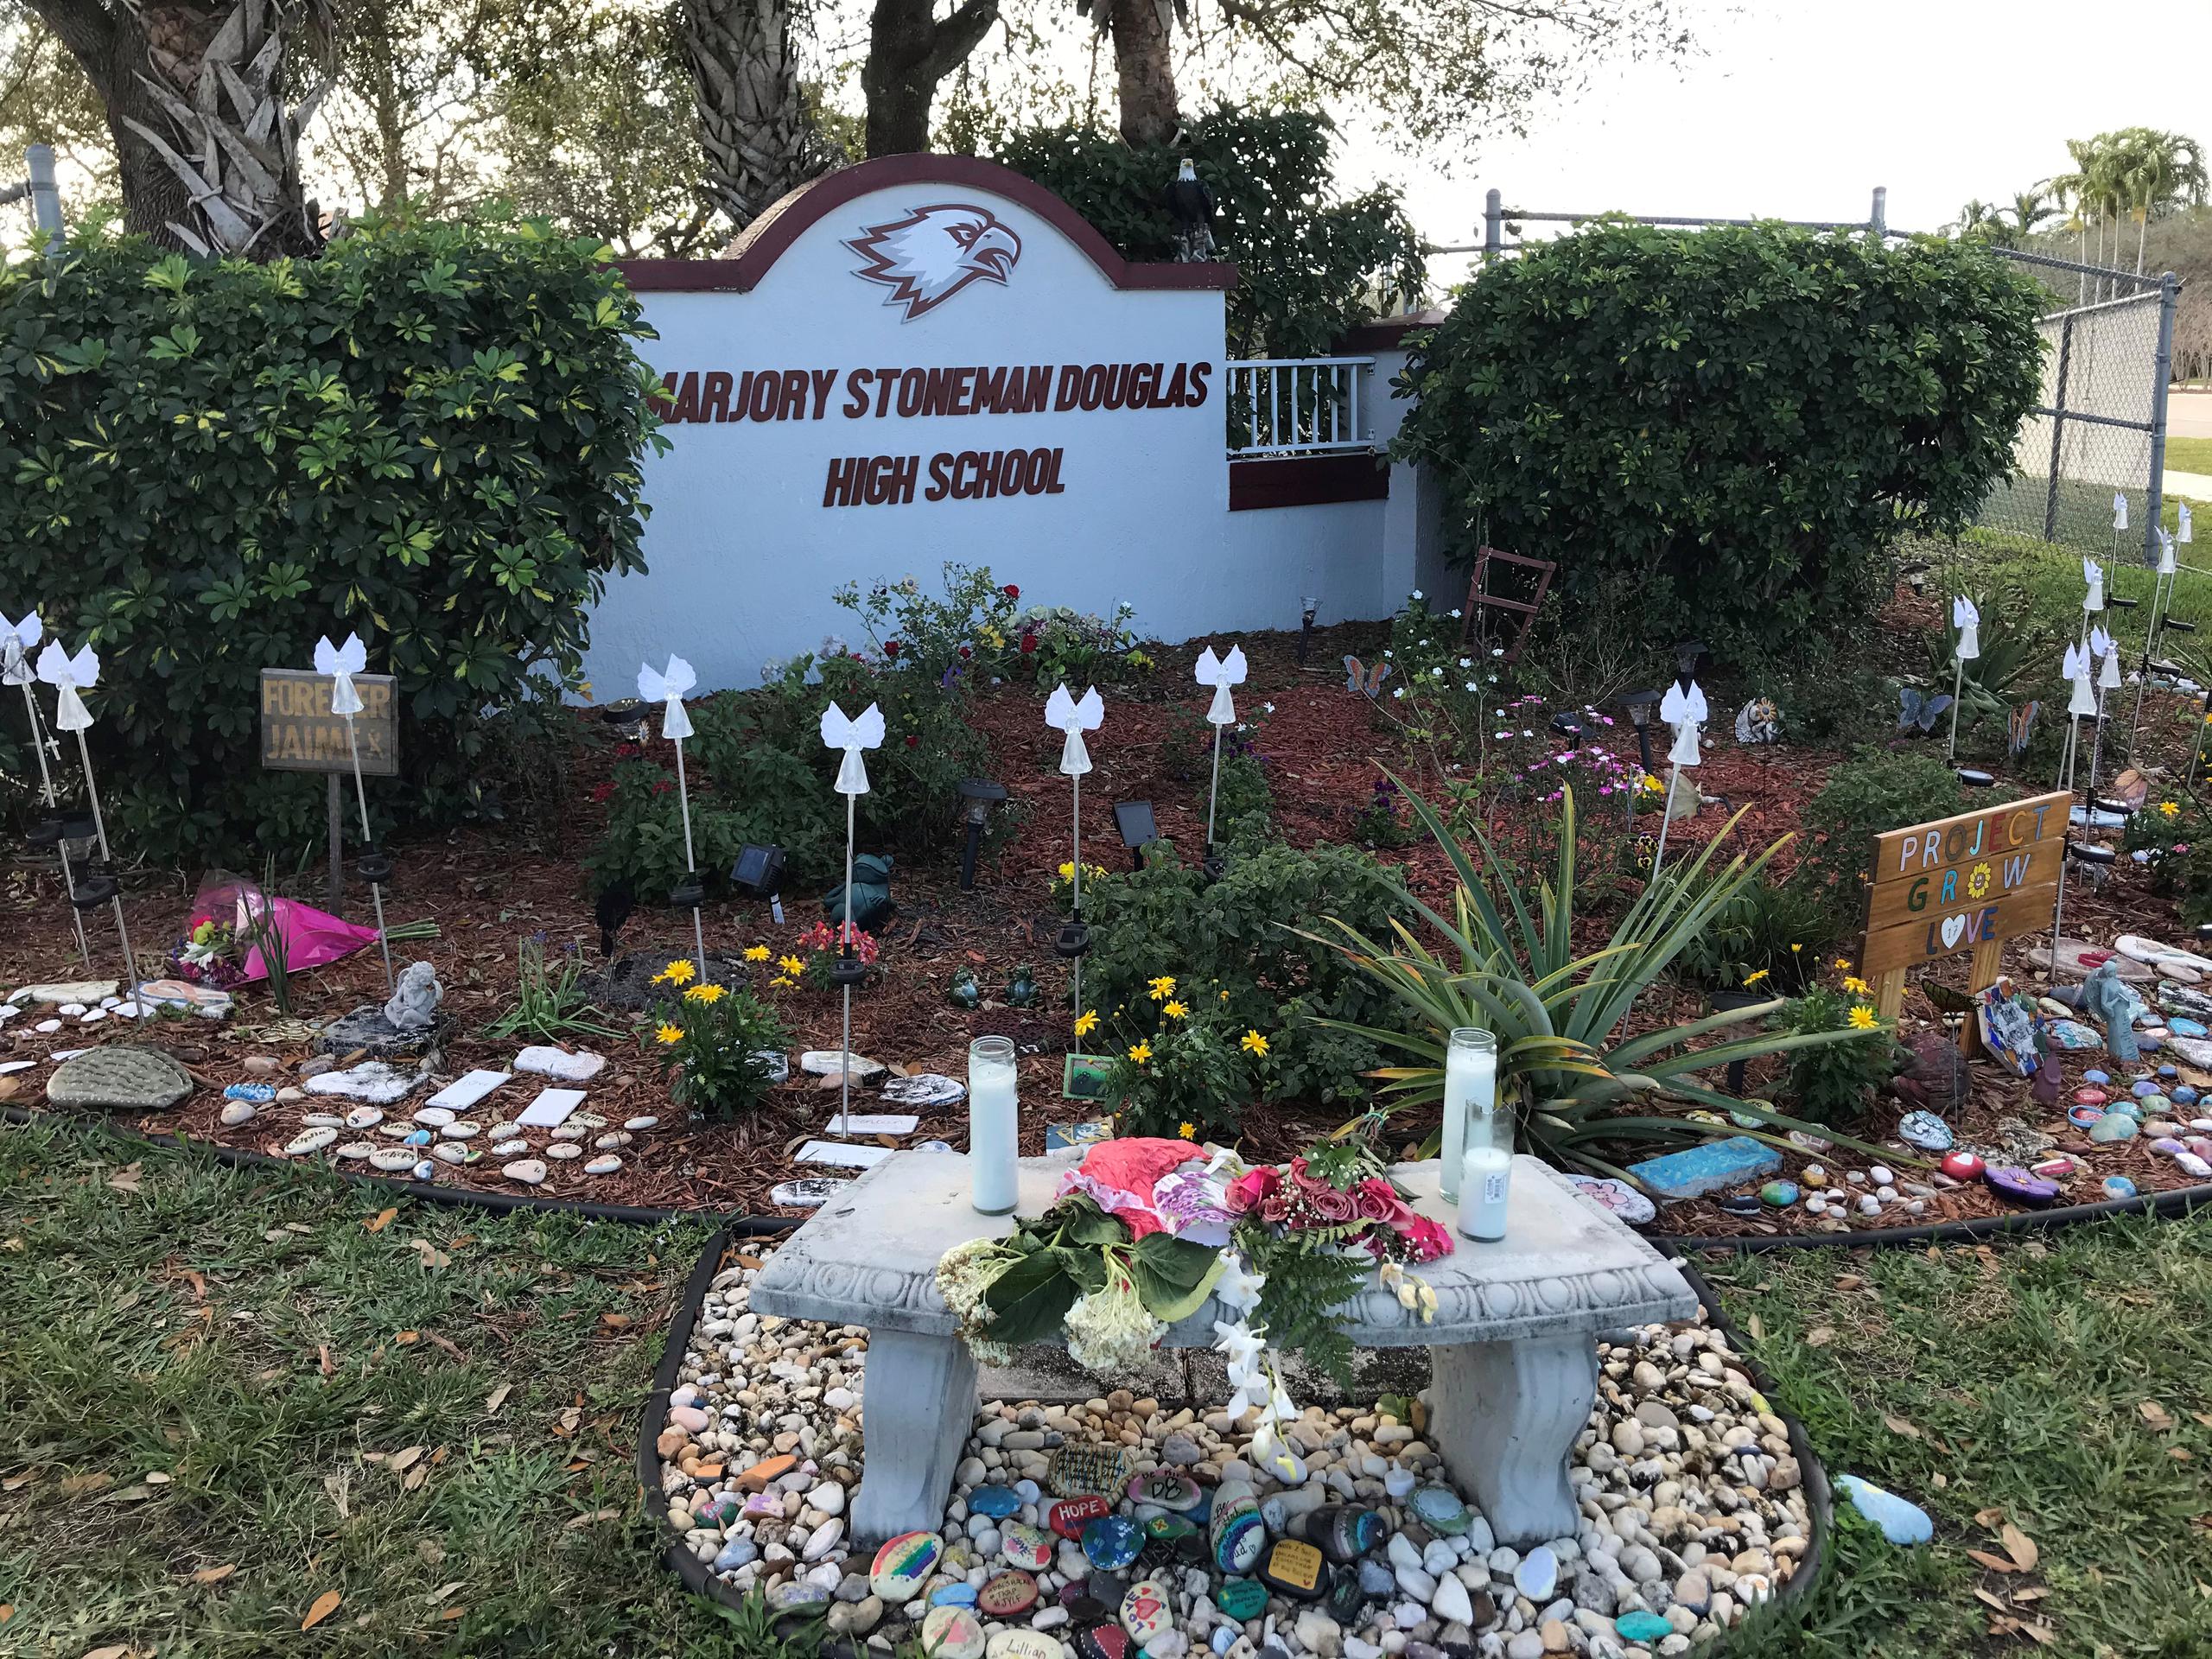 Fotografía de archivo fechada el 11 de febrero de 2021 donde se aprecia la placa de entrada de la escuela secundaria Marjory Stoneman Douglas, en Parkland, Florida (EE.UU.). EFE/Ana Mengotti
